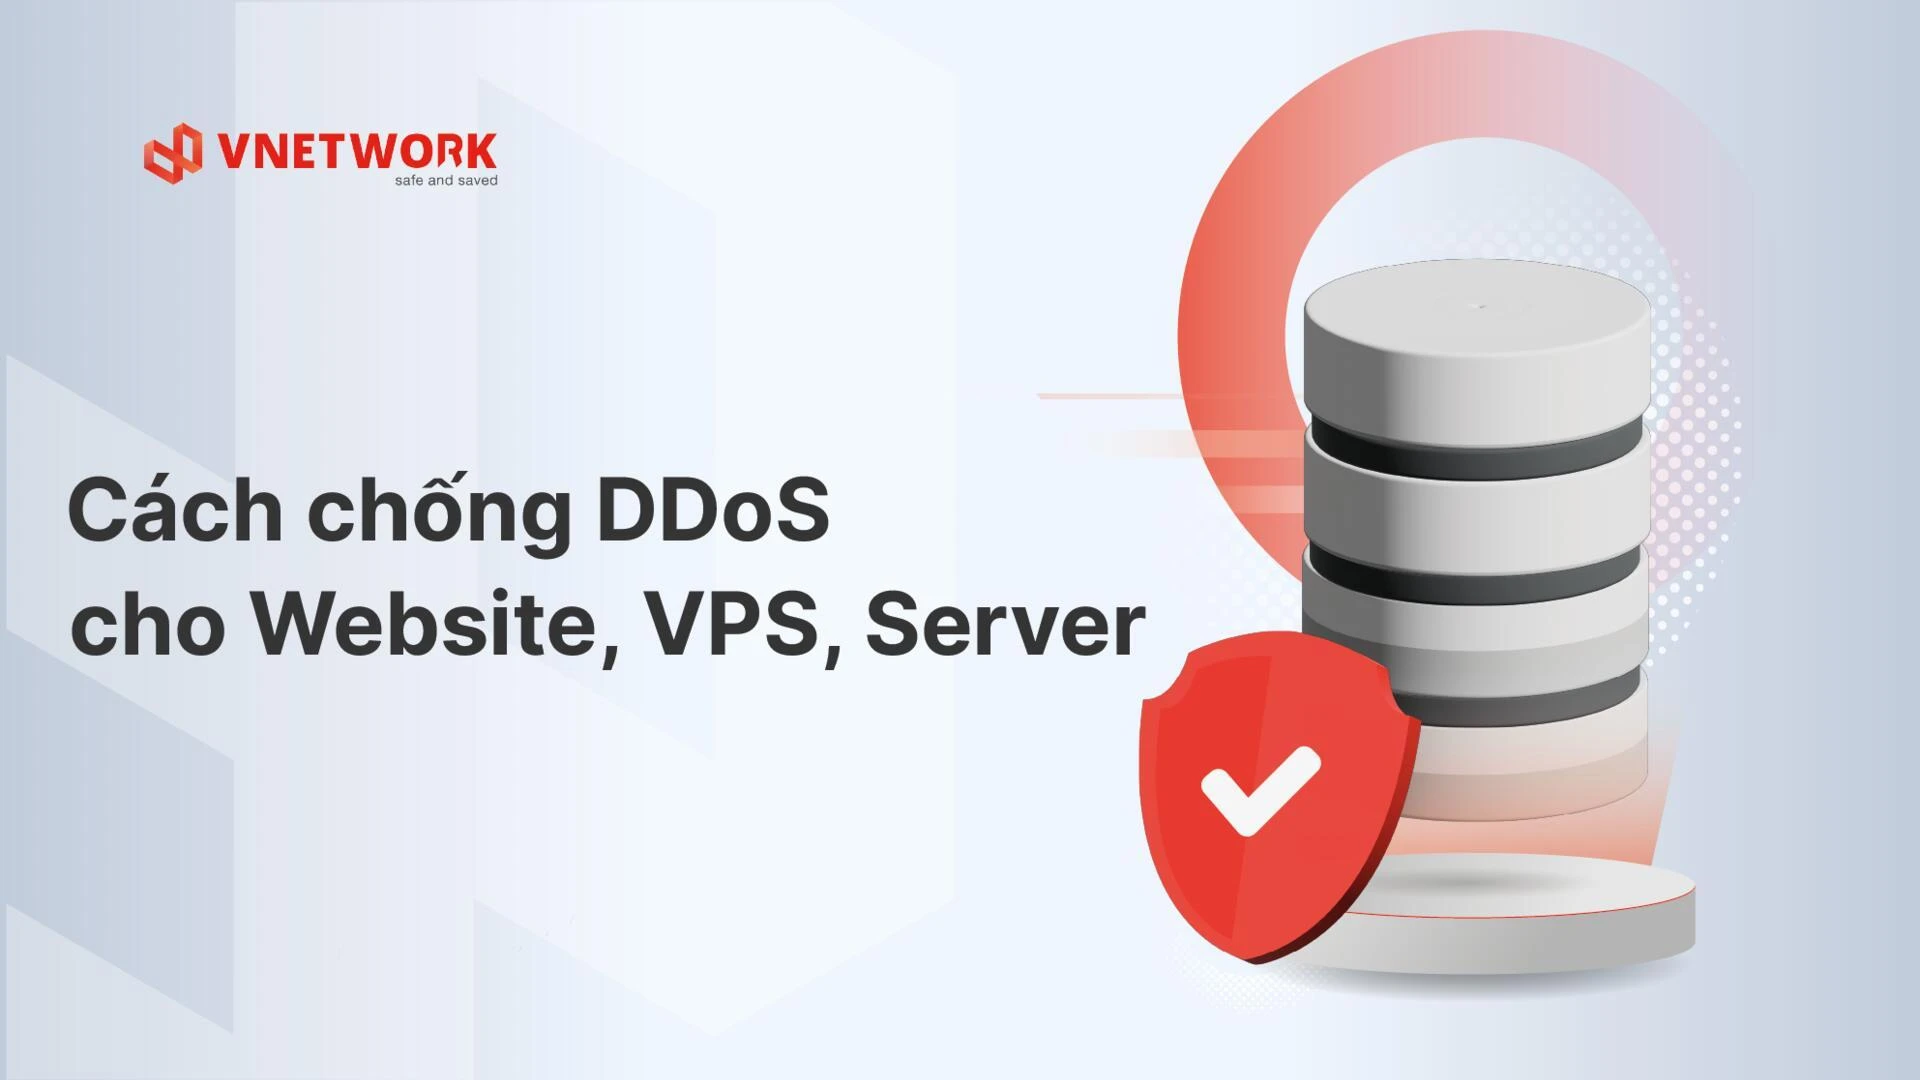 Cách chống DDoS Website, VPS, server hiệu quả 